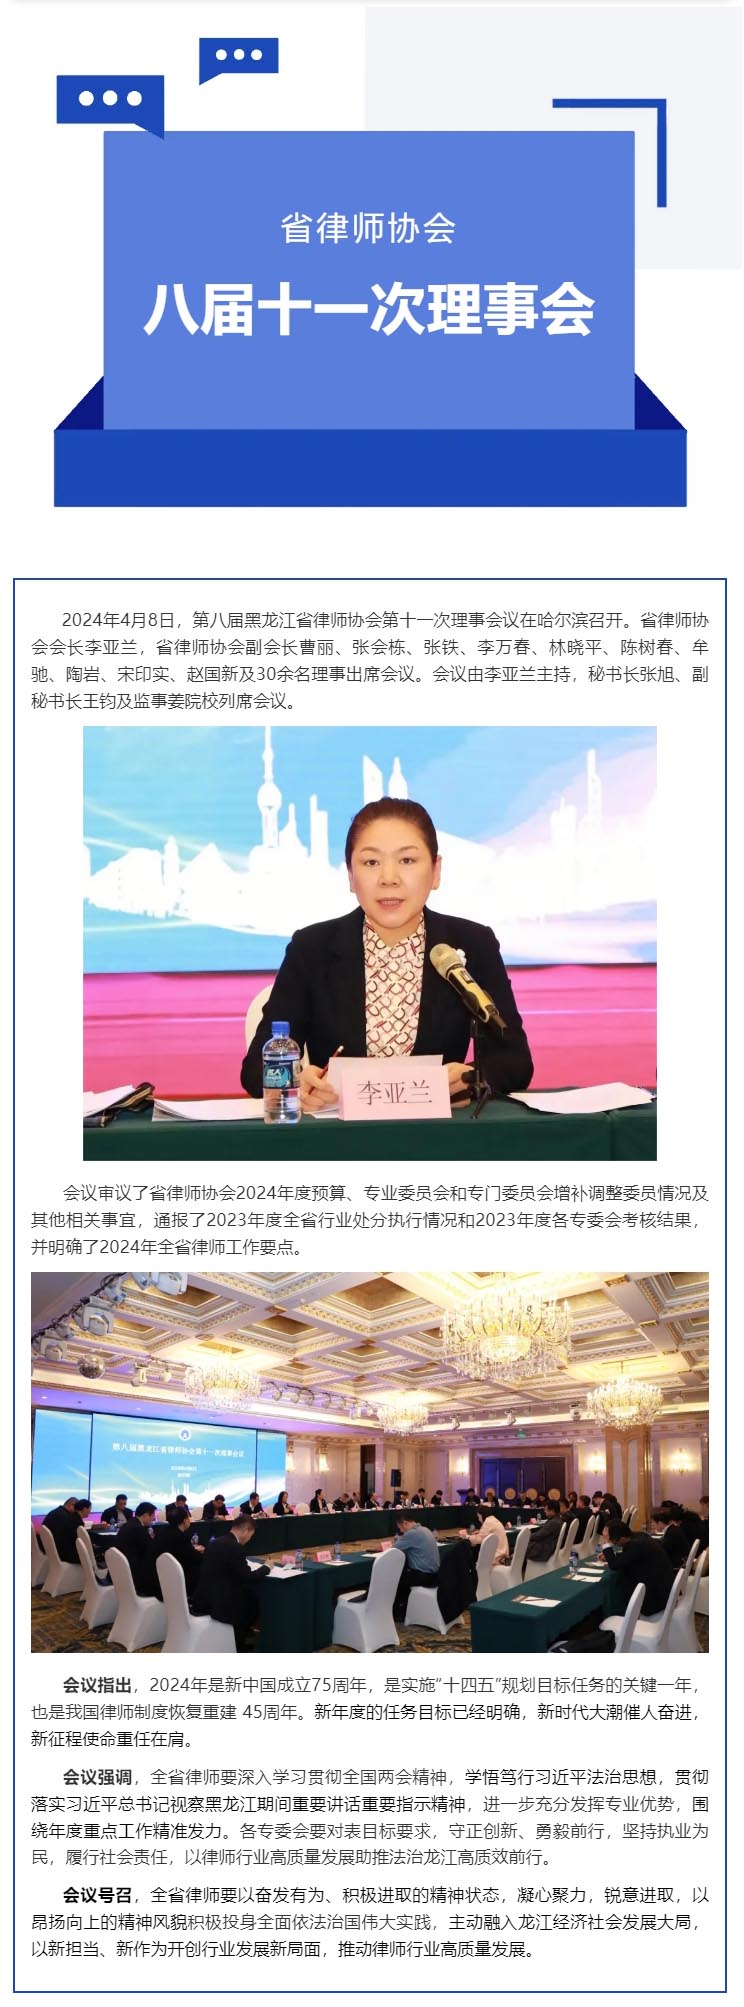 黑龙江省律师协会召开八届理事会第十一次会议.jpg